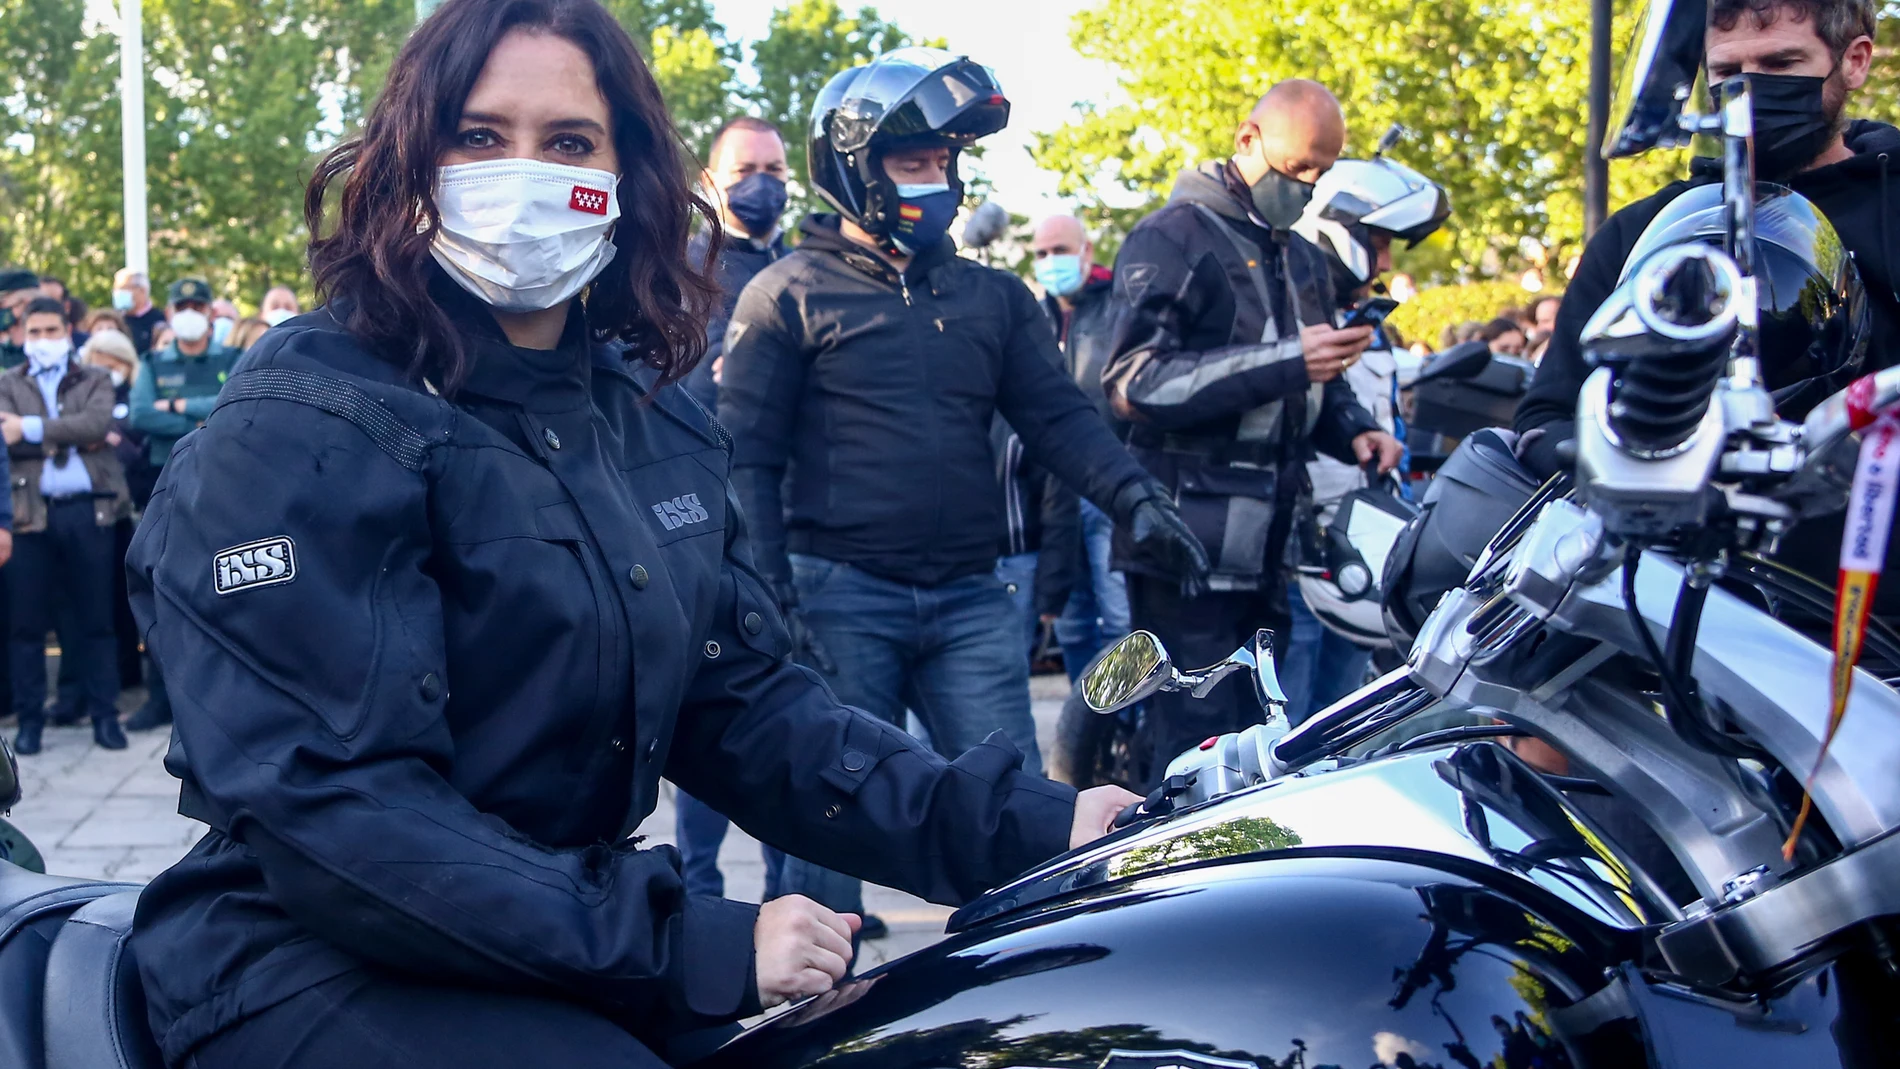 La presidenta de la Comunidad de Madrid y candidata a la reelección, Isabel Díaz Ayuso, en una moto durante un encuentro con representantes de asociaciones de Fuerzas y Cuerpos de Seguridad del Estado